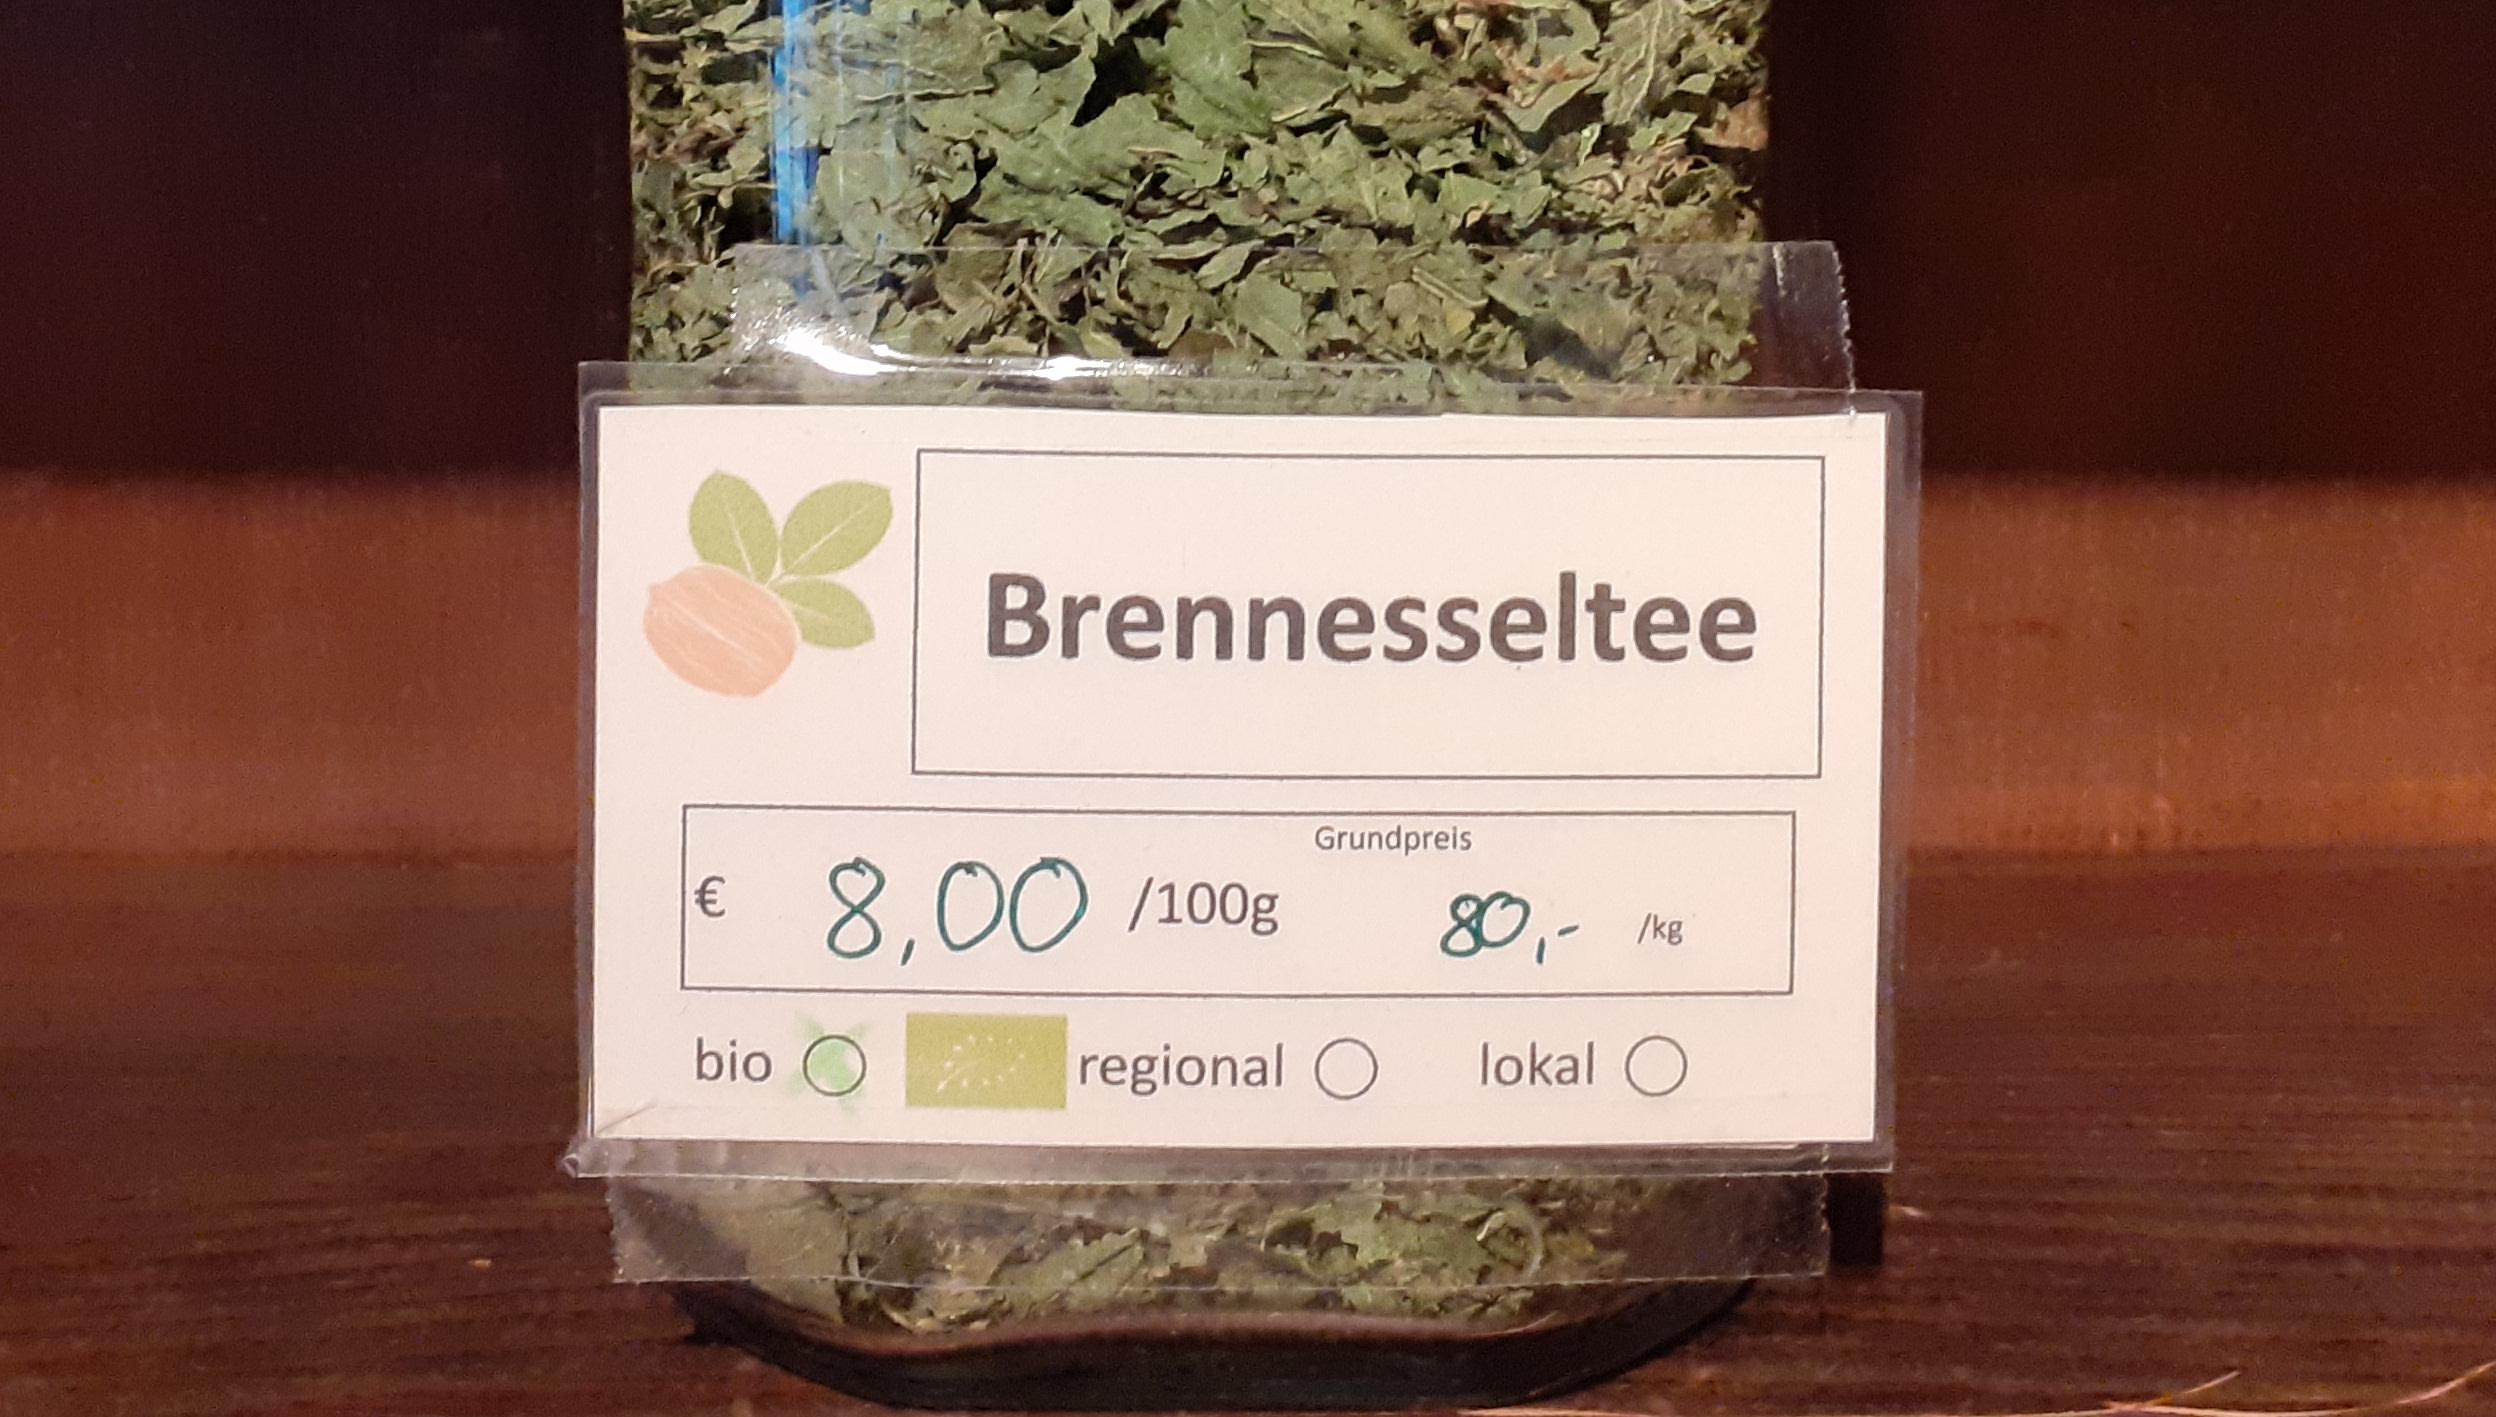 Brennesseltee